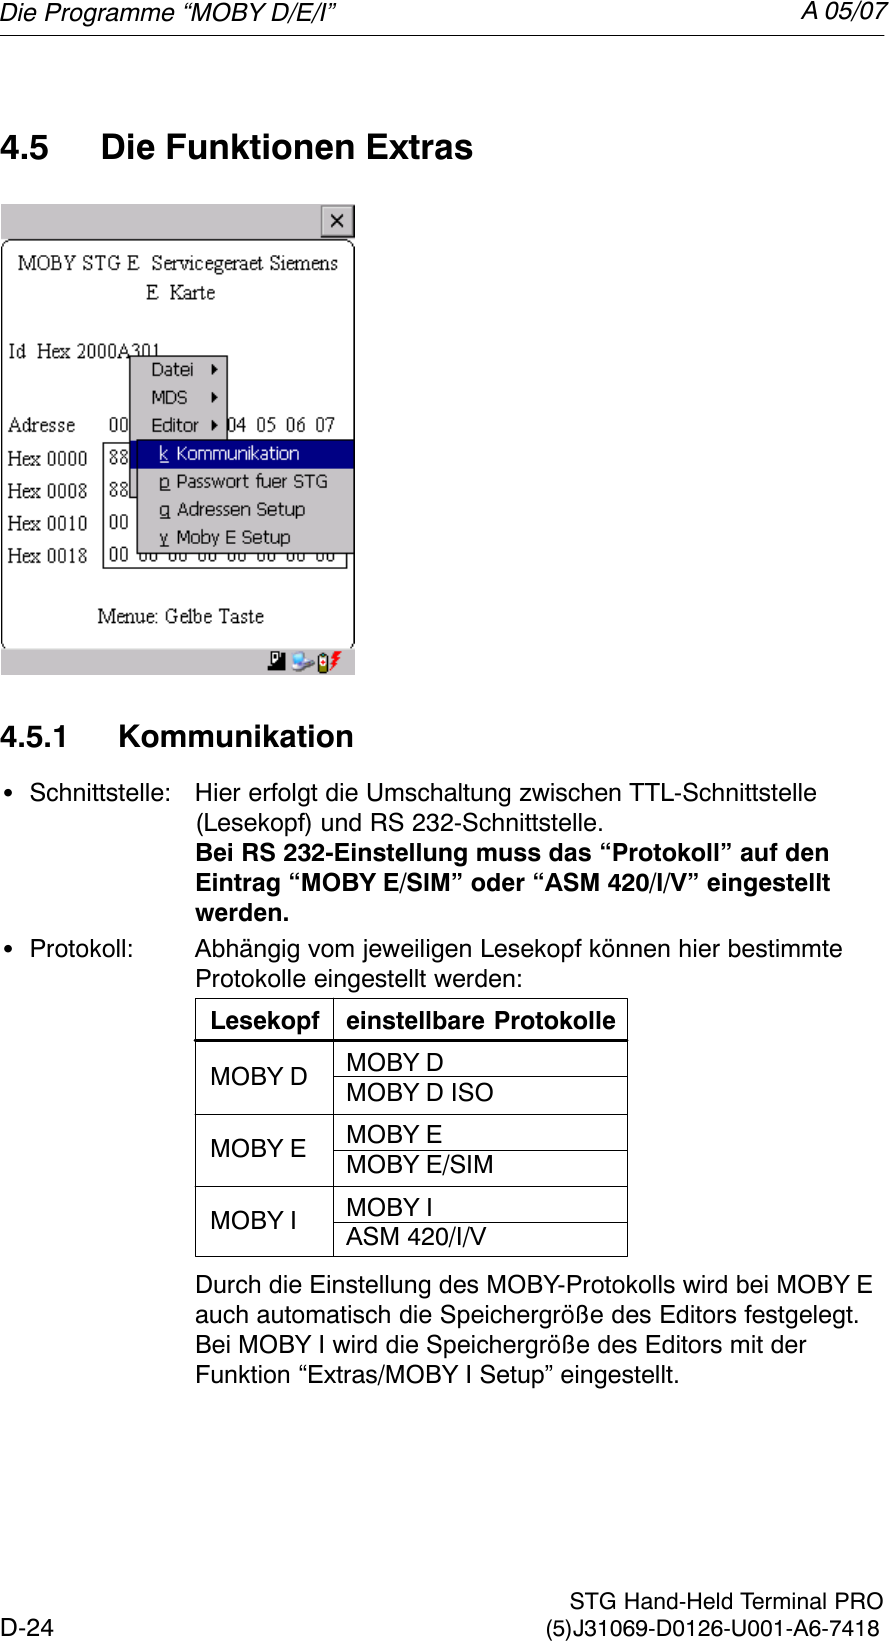 A 05/07D-24 STG Hand-Held Terminal PRO(5)J31069-D0126-U001-A6-74184.5 Die Funktionen Extras4.5.1 KommunikationSSchnittstelle: Hier erfolgt die Umschaltung zwischen TTL-Schnittstelle (Lesekopf) und RS 232-Schnittstelle.Bei RS 232-Einstellung muss das “Protokoll” auf den Eintrag “MOBY E/SIM” oder “ASM 420/I/V” eingestelltwerden.SProtokoll: Abhängig vom jeweiligen Lesekopf können hier bestimmteProtokolle eingestellt werden:Lesekopf einstellbare ProtokolleMOBY DMOBY D ISOMOBY EMOBY E/SIMMOBY IASM 420/I/VMOBY DMOBY EMOBY IDurch die Einstellung des MOBY-Protokolls wird bei MOBY E auch automatisch die Speichergröße des Editors festgelegt.Bei MOBY I wird die Speichergröße des Editors mit der Funktion “Extras/MOBY I Setup” eingestellt.Die Programme “MOBY D/E/I”